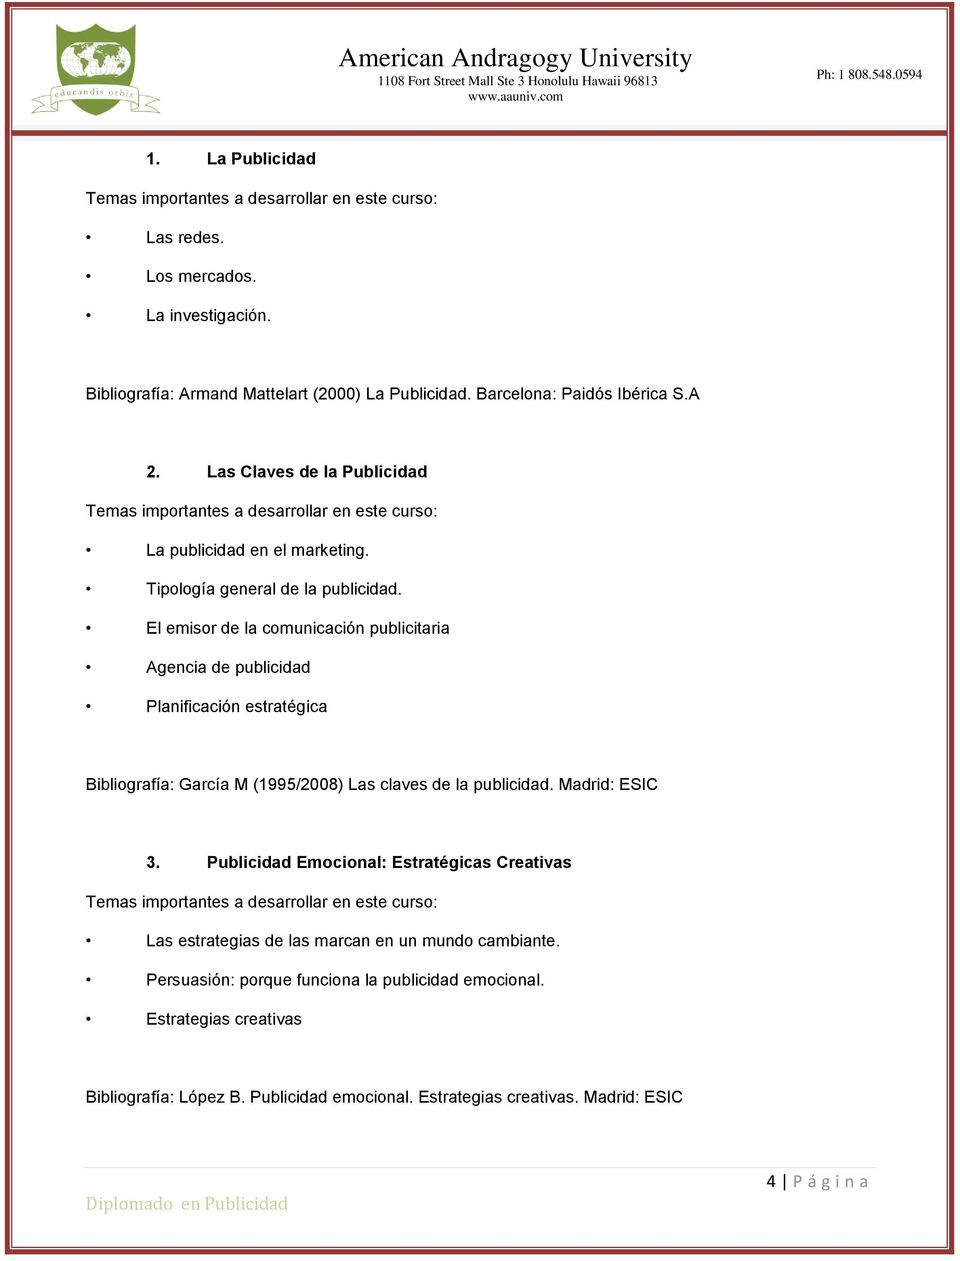 El emisor de la comunicación publicitaria Agencia de publicidad Planificación estratégica Bibliografía: García M (1995/2008) Las claves de la publicidad. Madrid: ESIC 3.